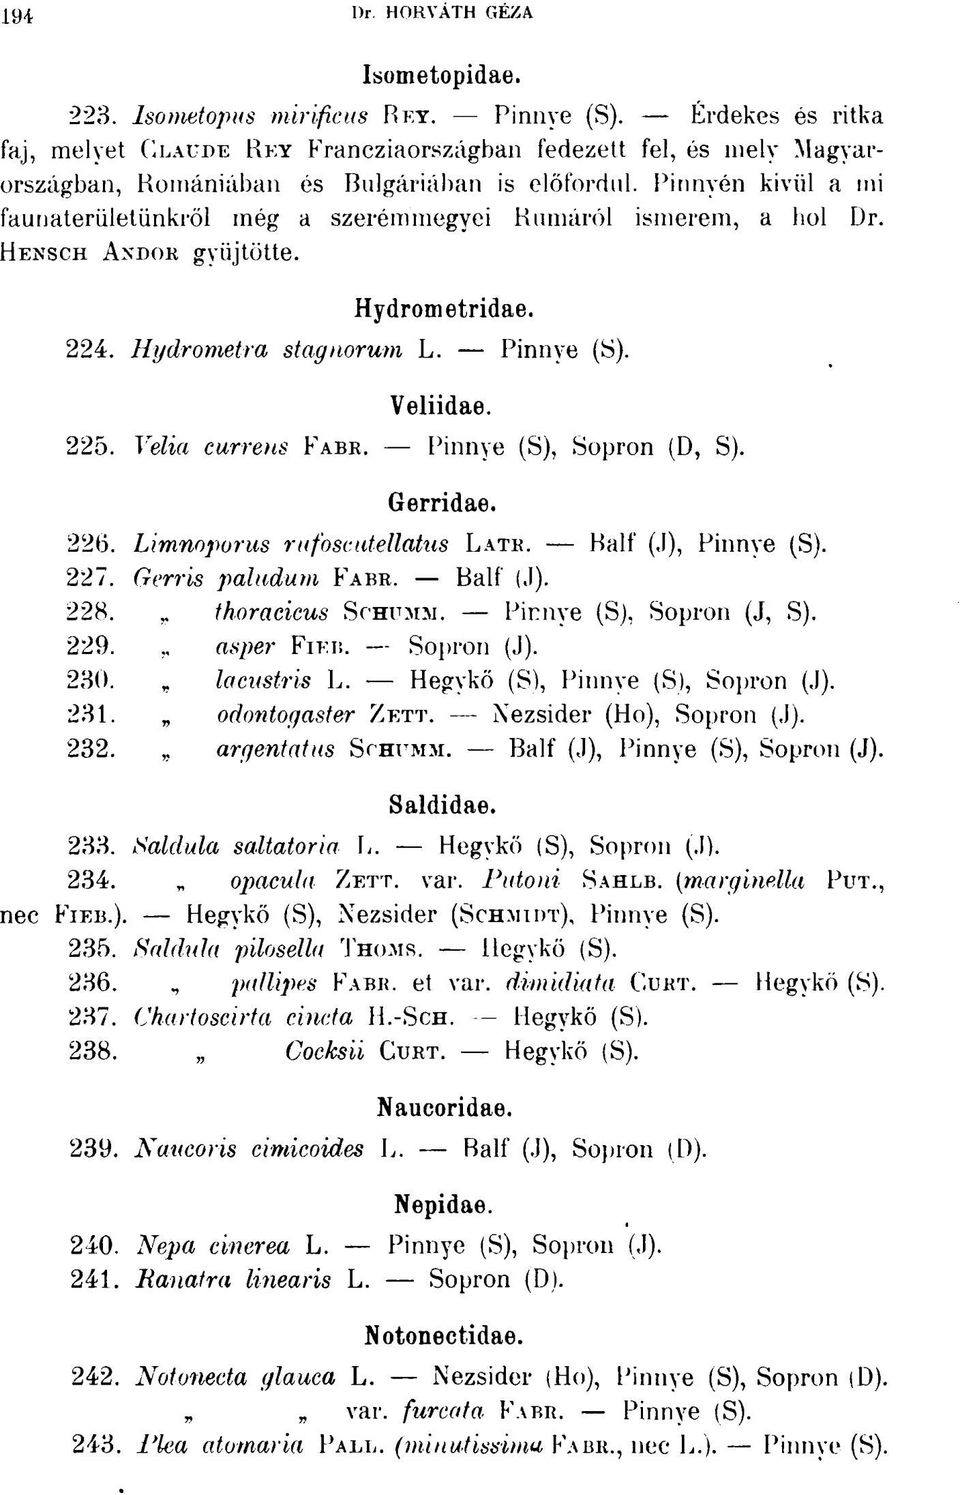 Pinnvén kivül a mi faunaterületünkről még a szerémmegyei Rumáról ismerem, a hol Dr. HENSCH ANDOR gyűjtötte. Hydrometridae. 224. Hydrometra stagnorum L. Pinnye (S). Veliidae. 225. Velia currens FABR.